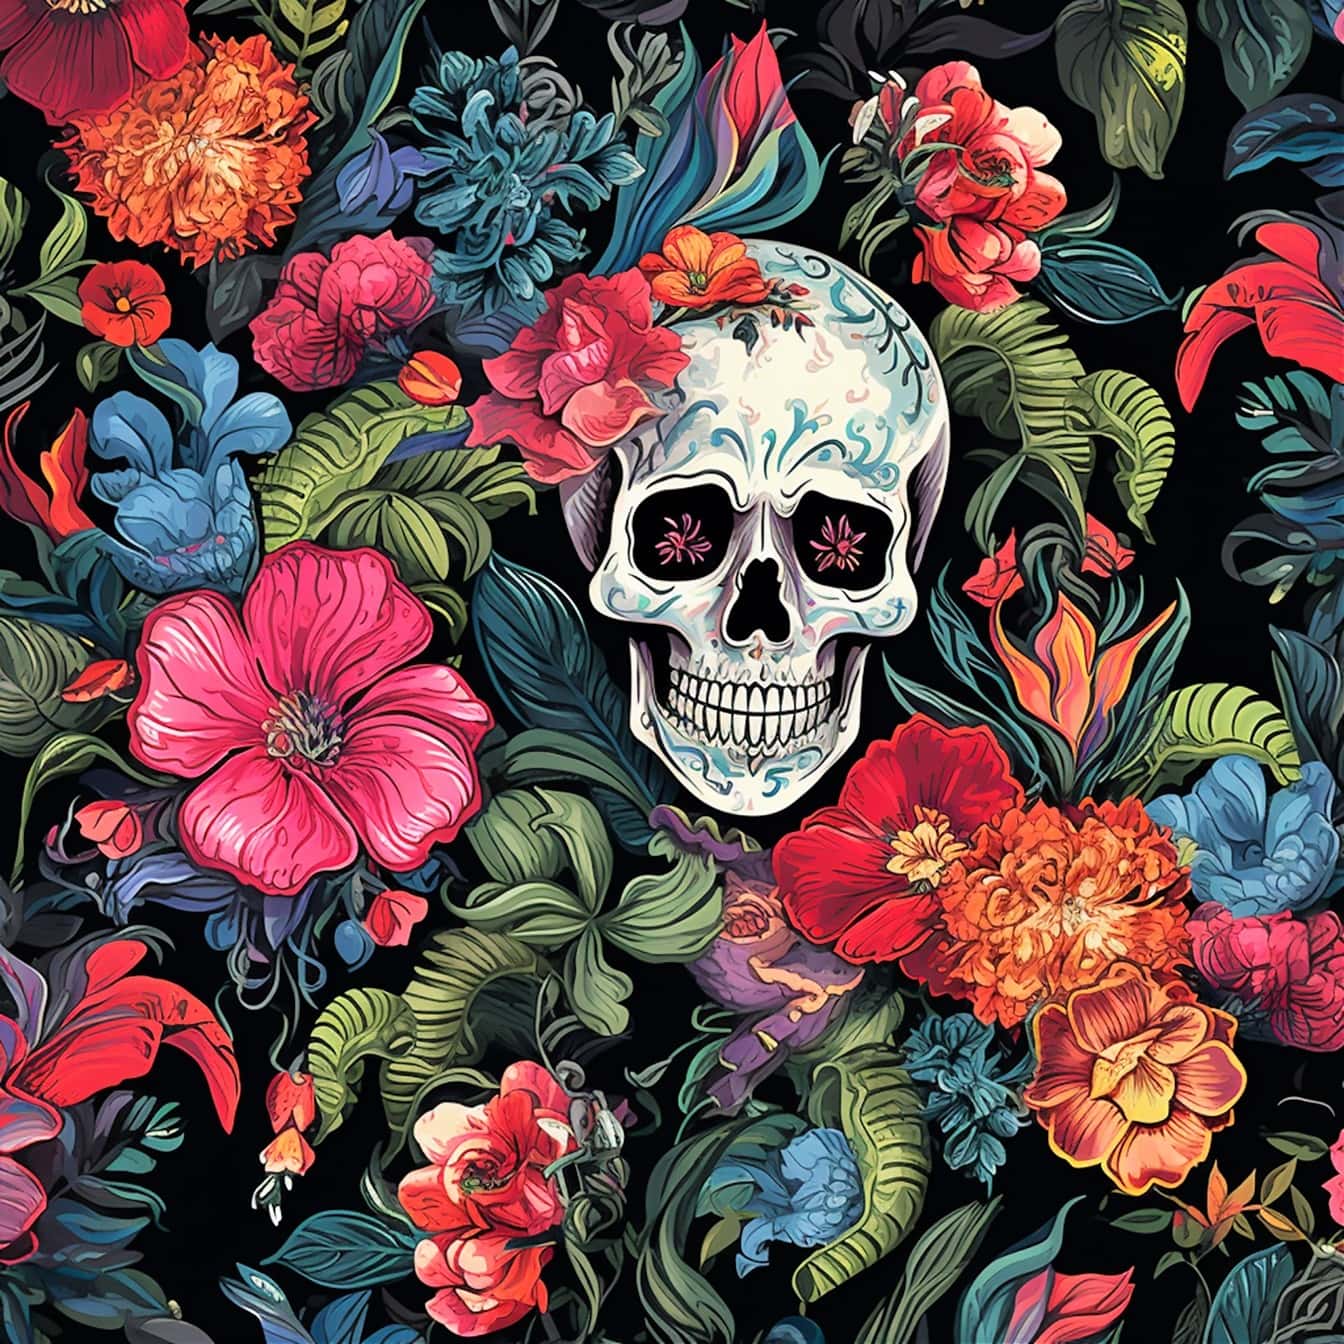 Aquarell uitstekende vrije stijlillustratie van schedel in bloemen